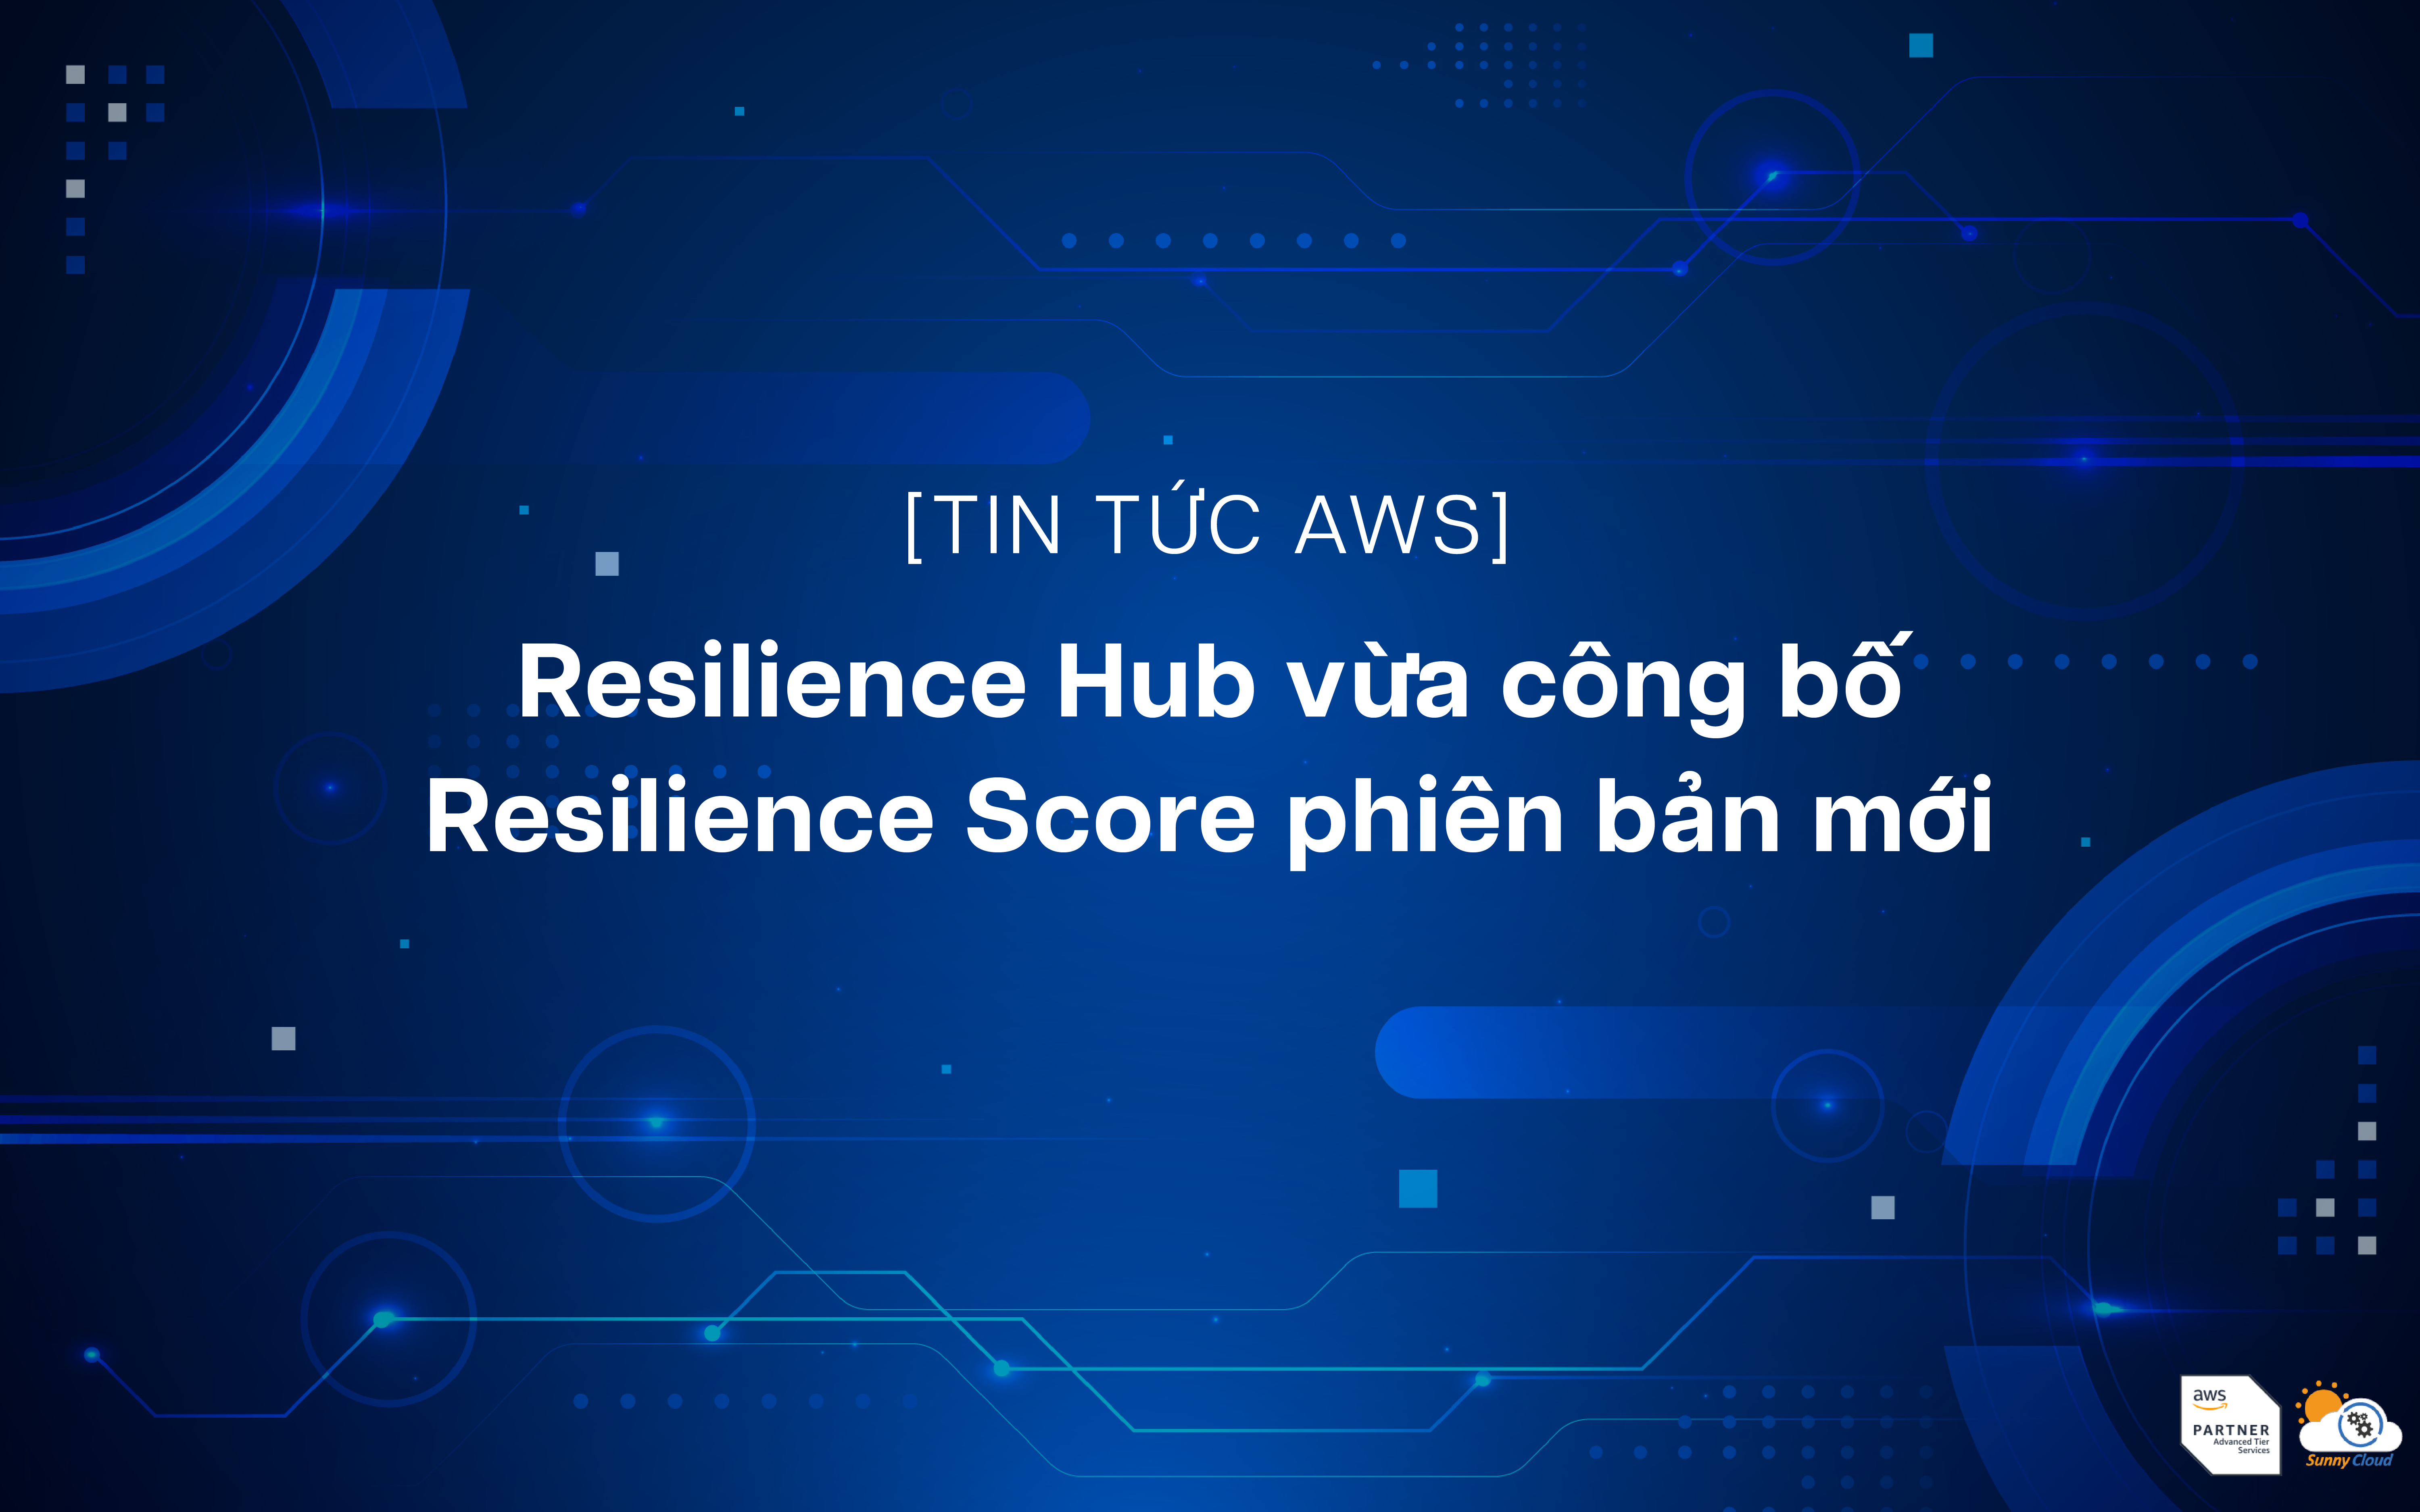 Resilience Hub vừa công bố Resilience Score phiên bản mới